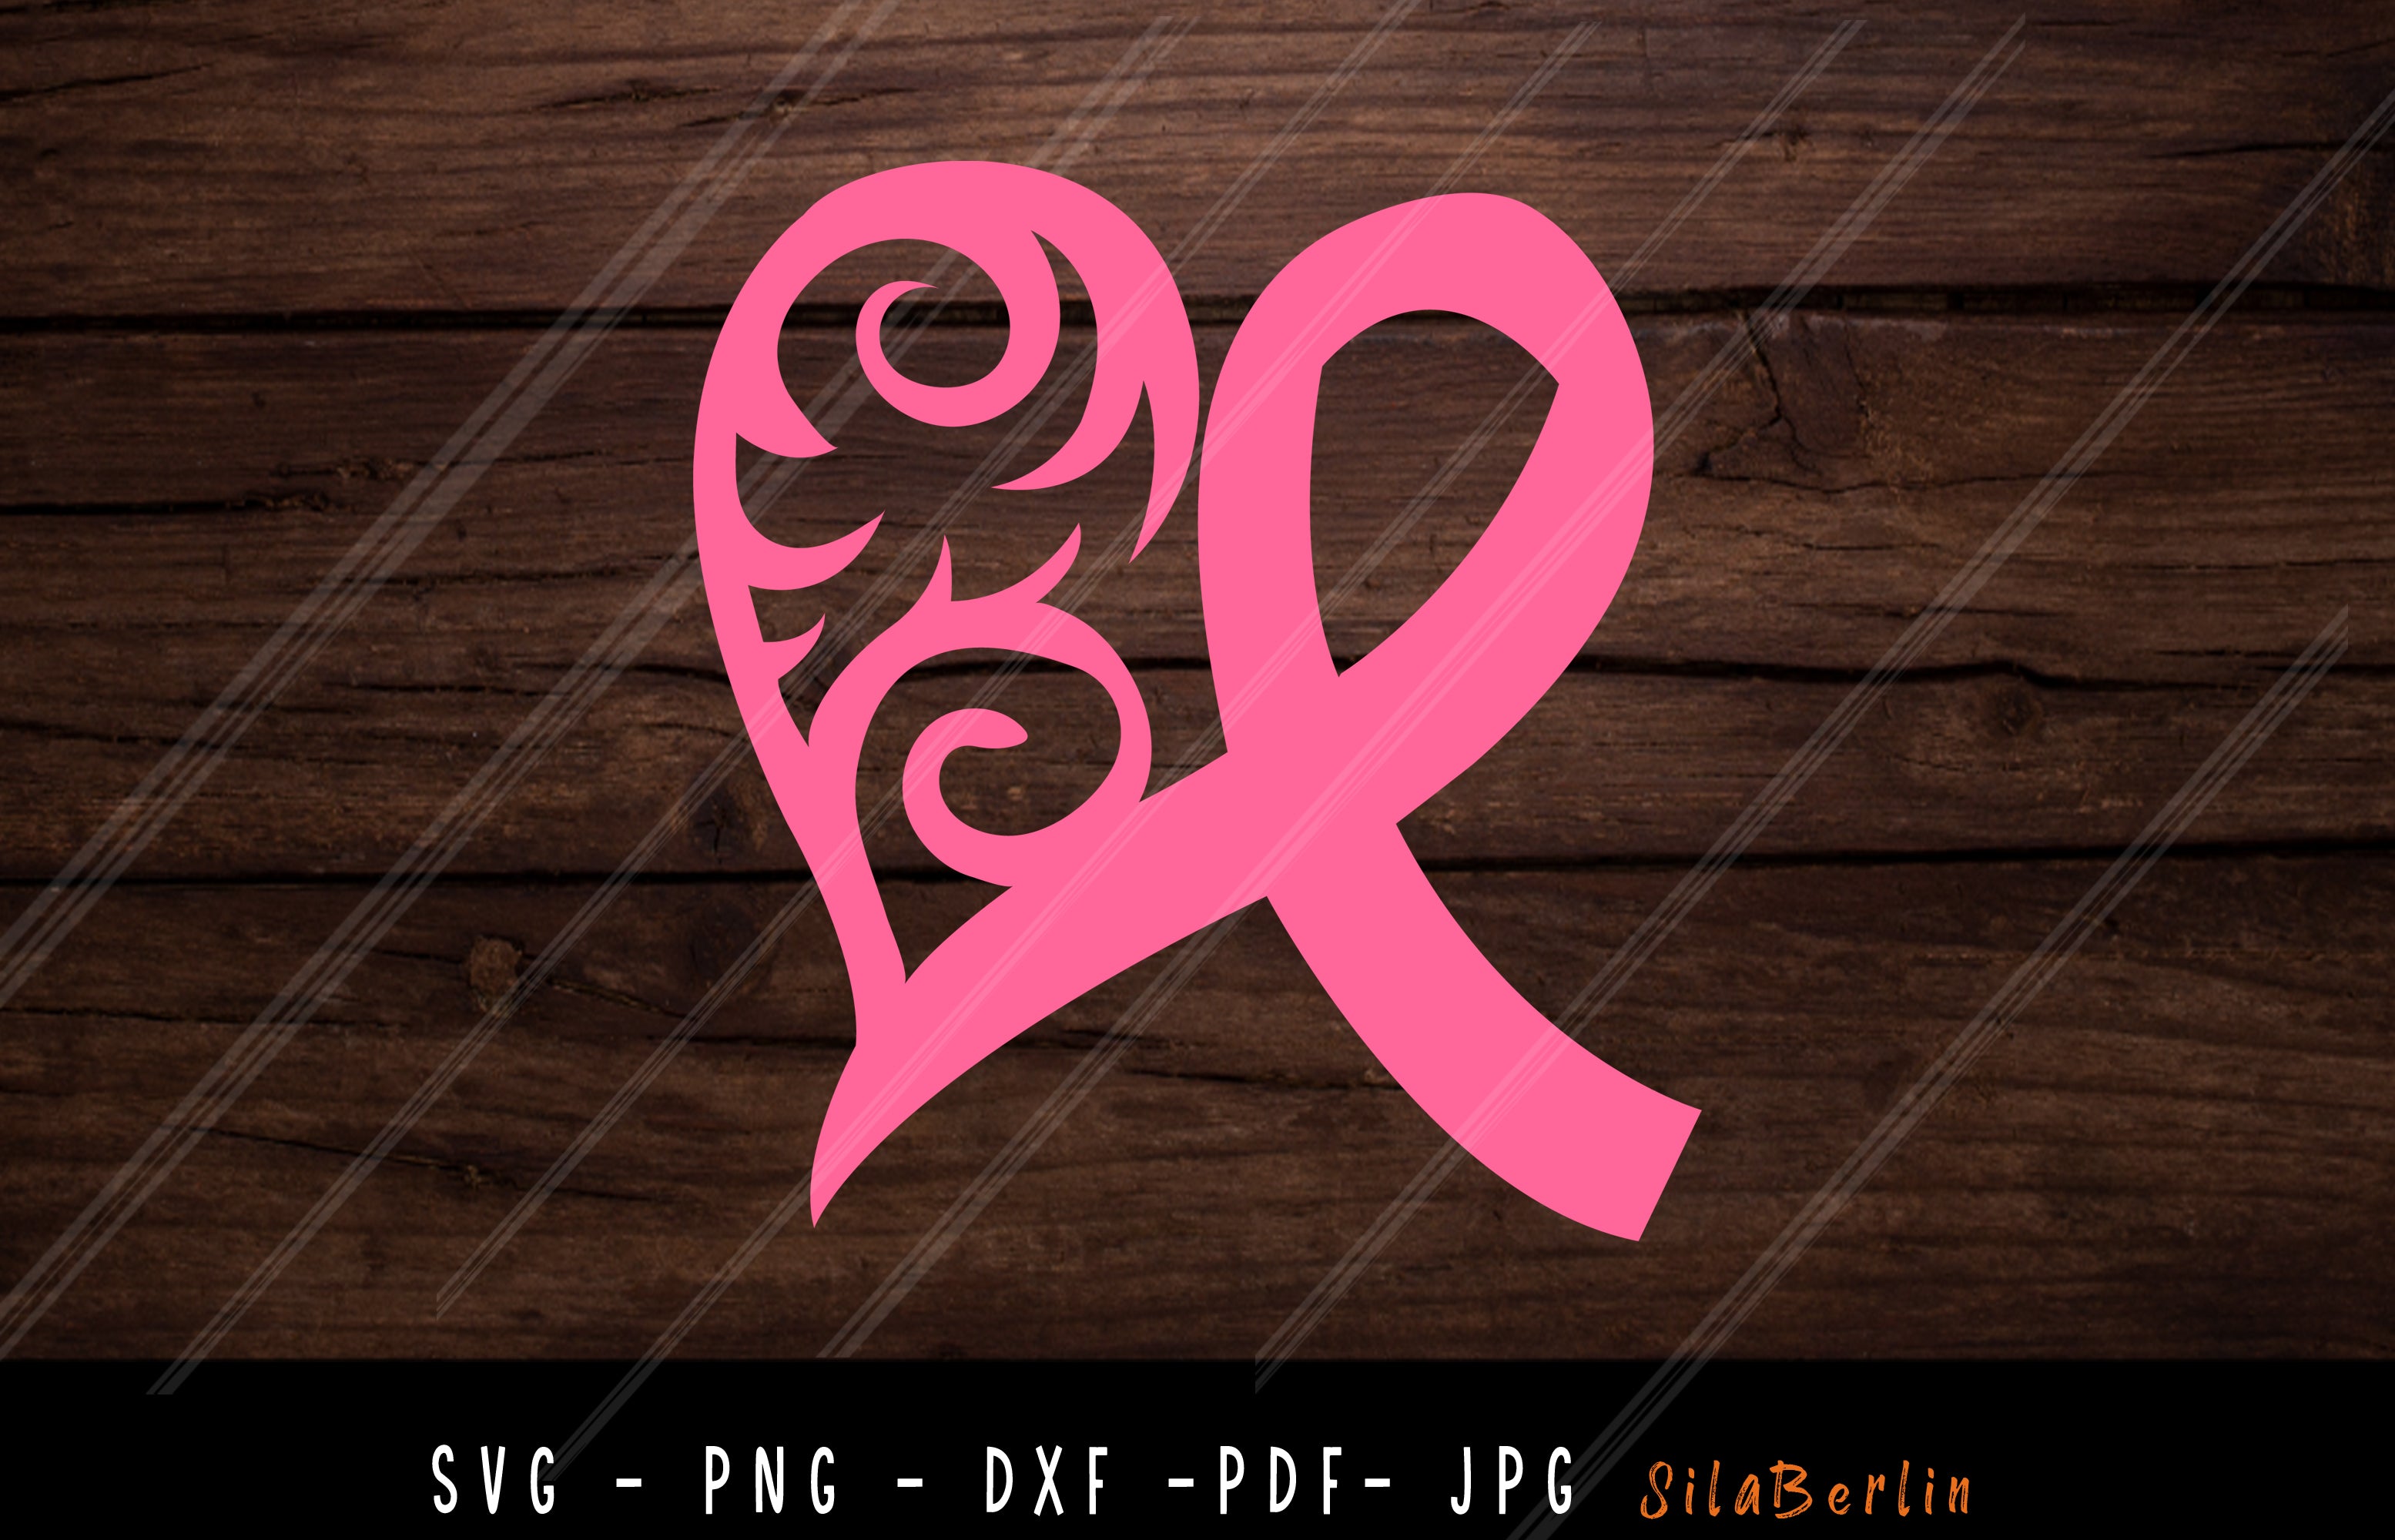 Crush Cancer SVG Breast cancer Awareness svg pink ribbon svg